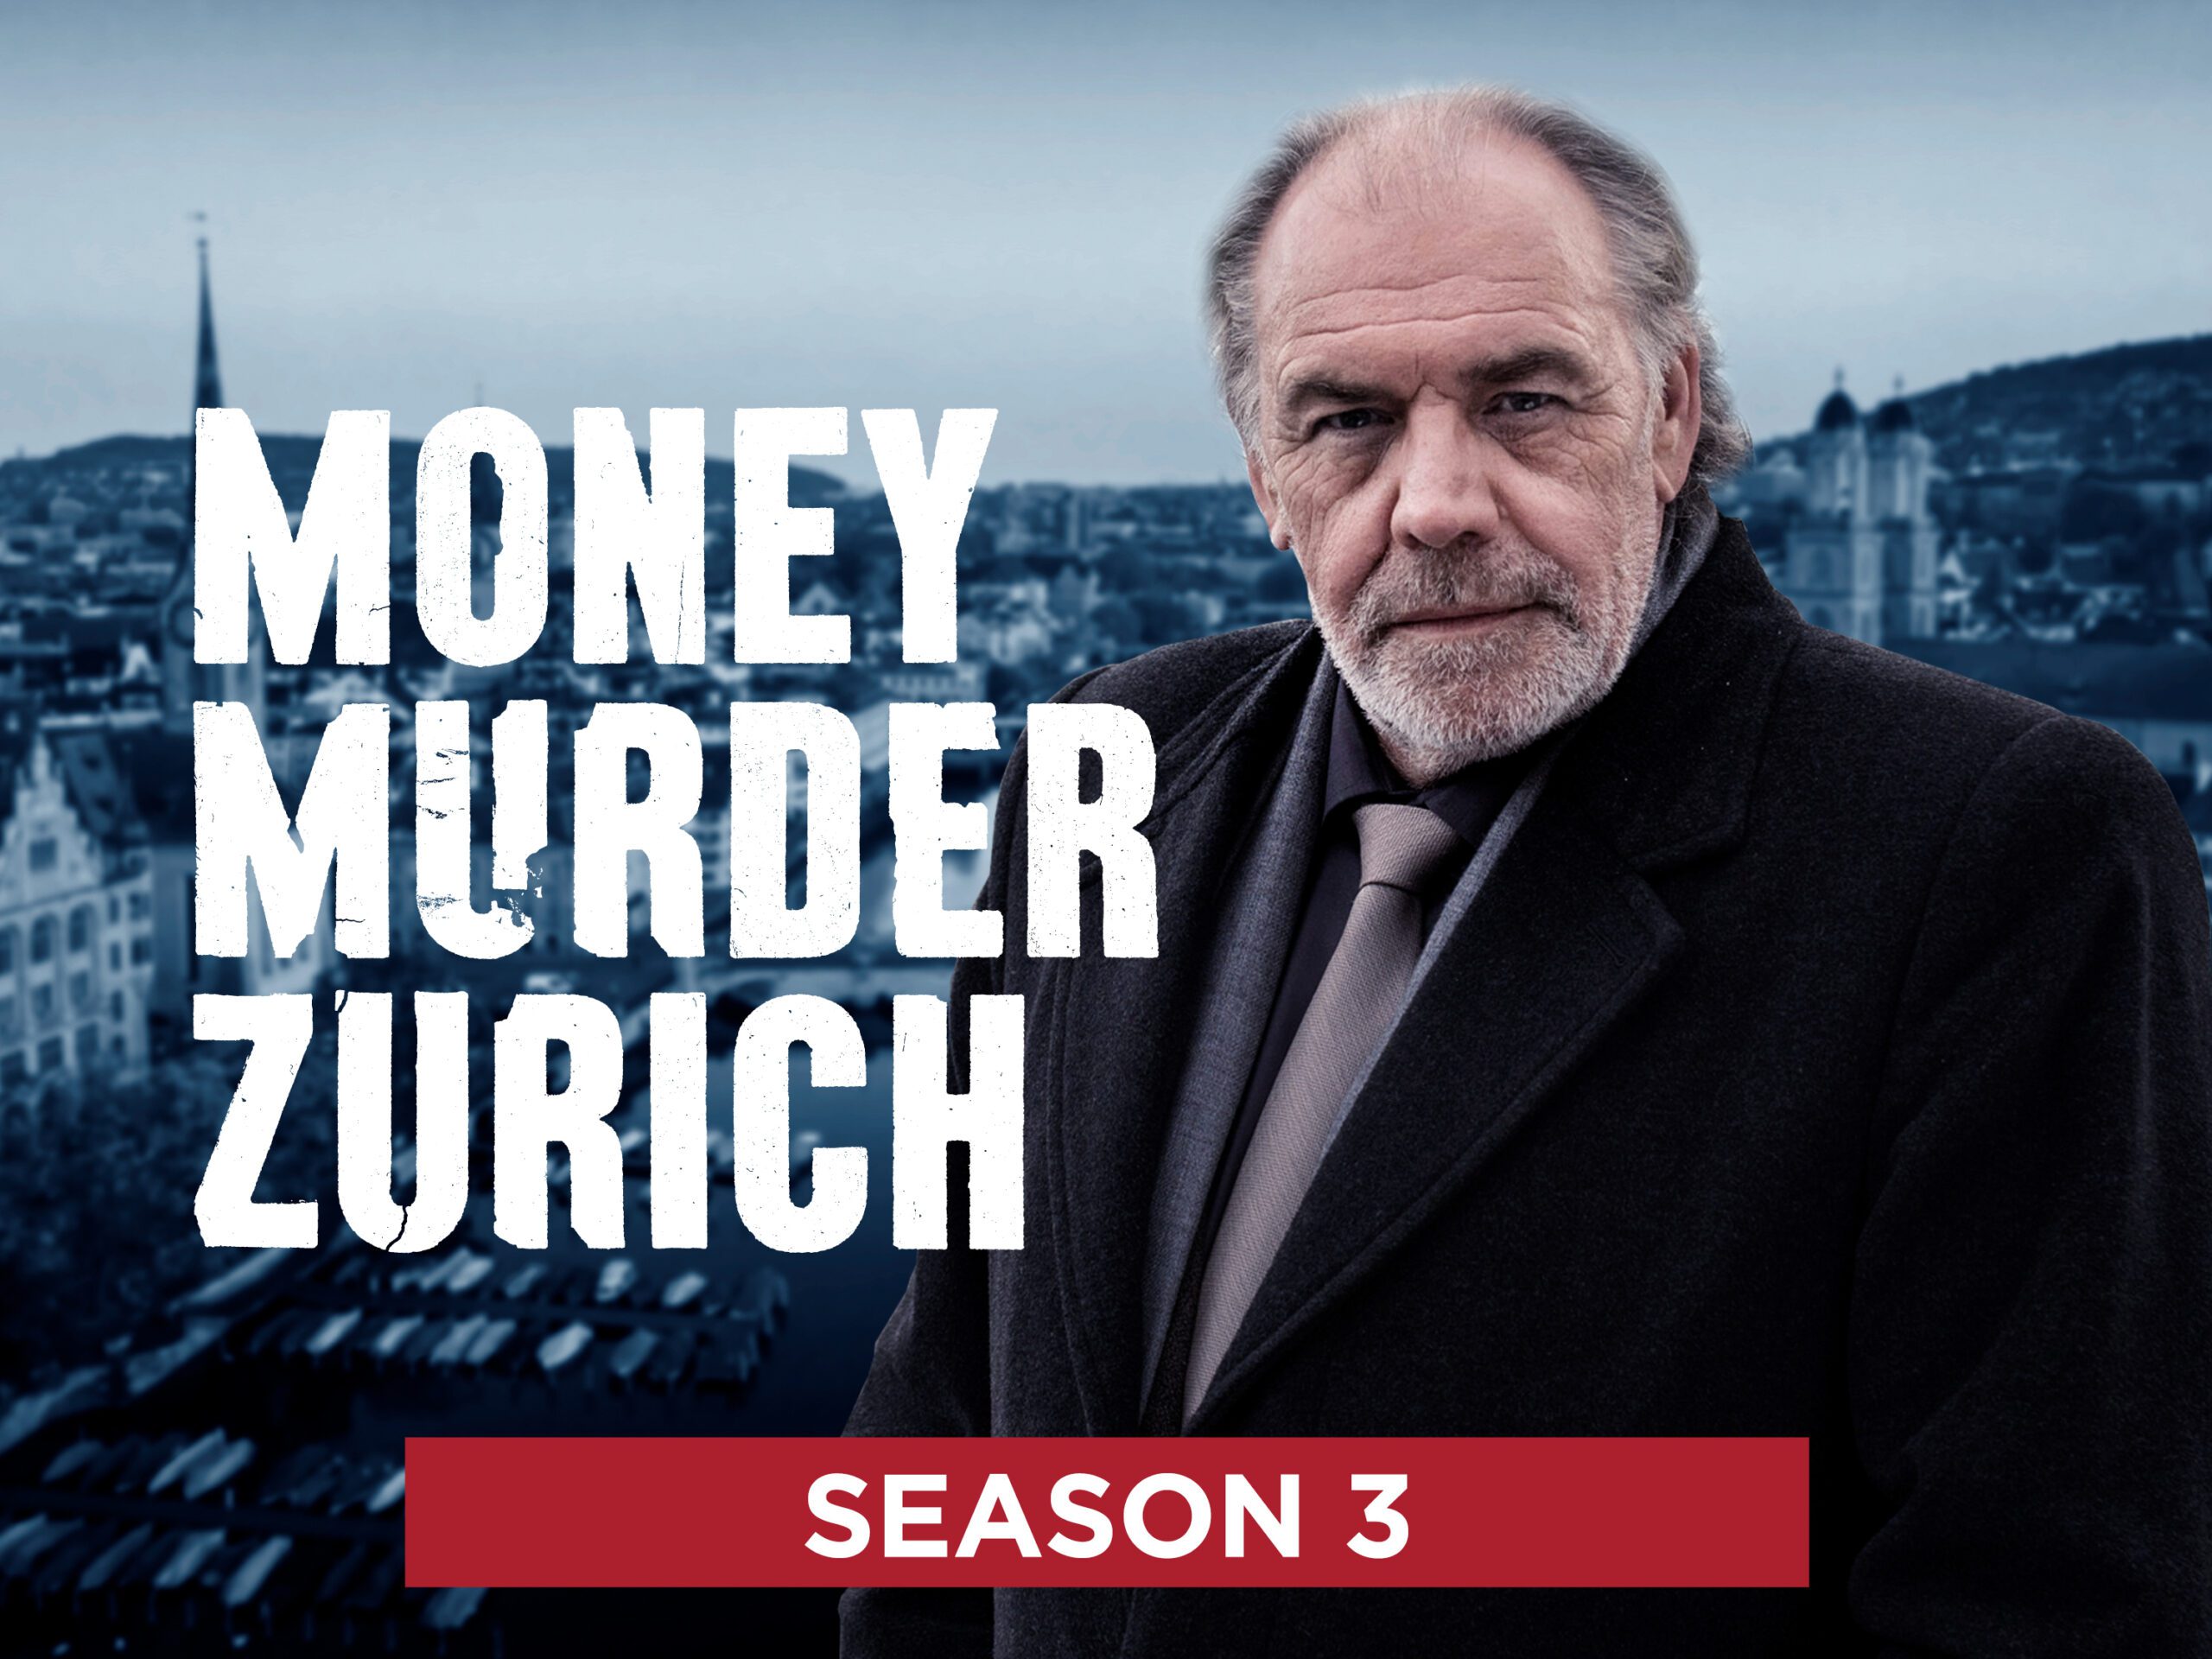 Money Murder Zurich